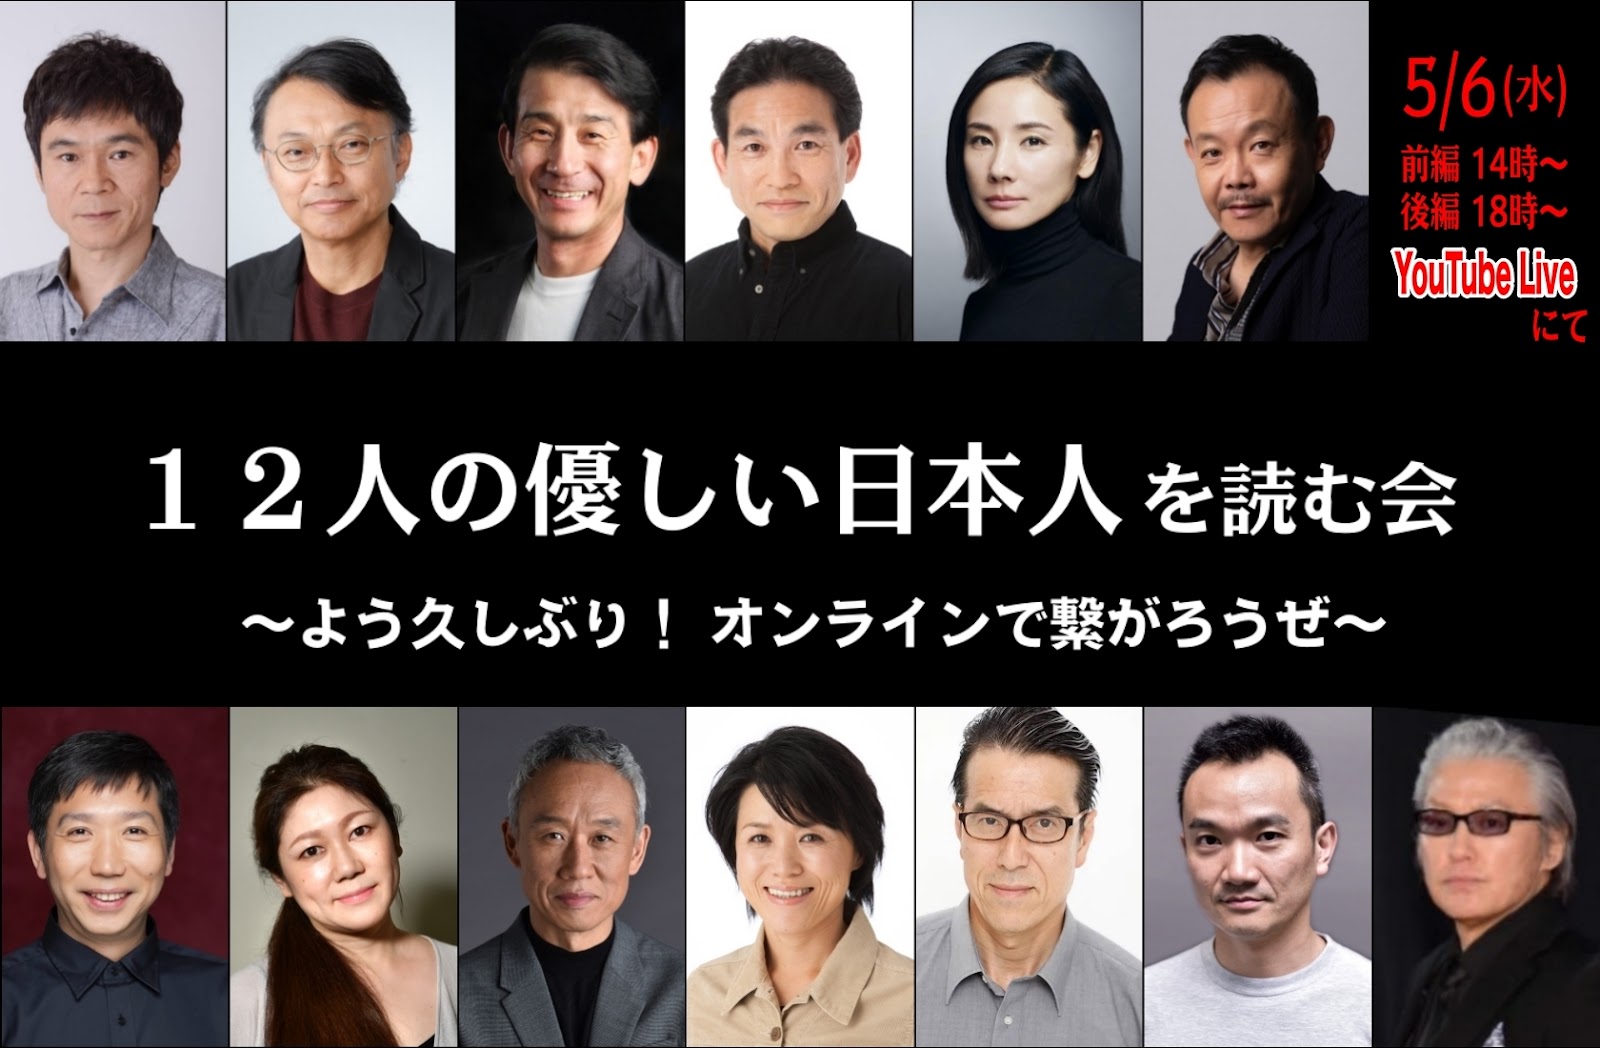 12人の優しい日本人 PARCO劇場 三谷幸喜 作、演出